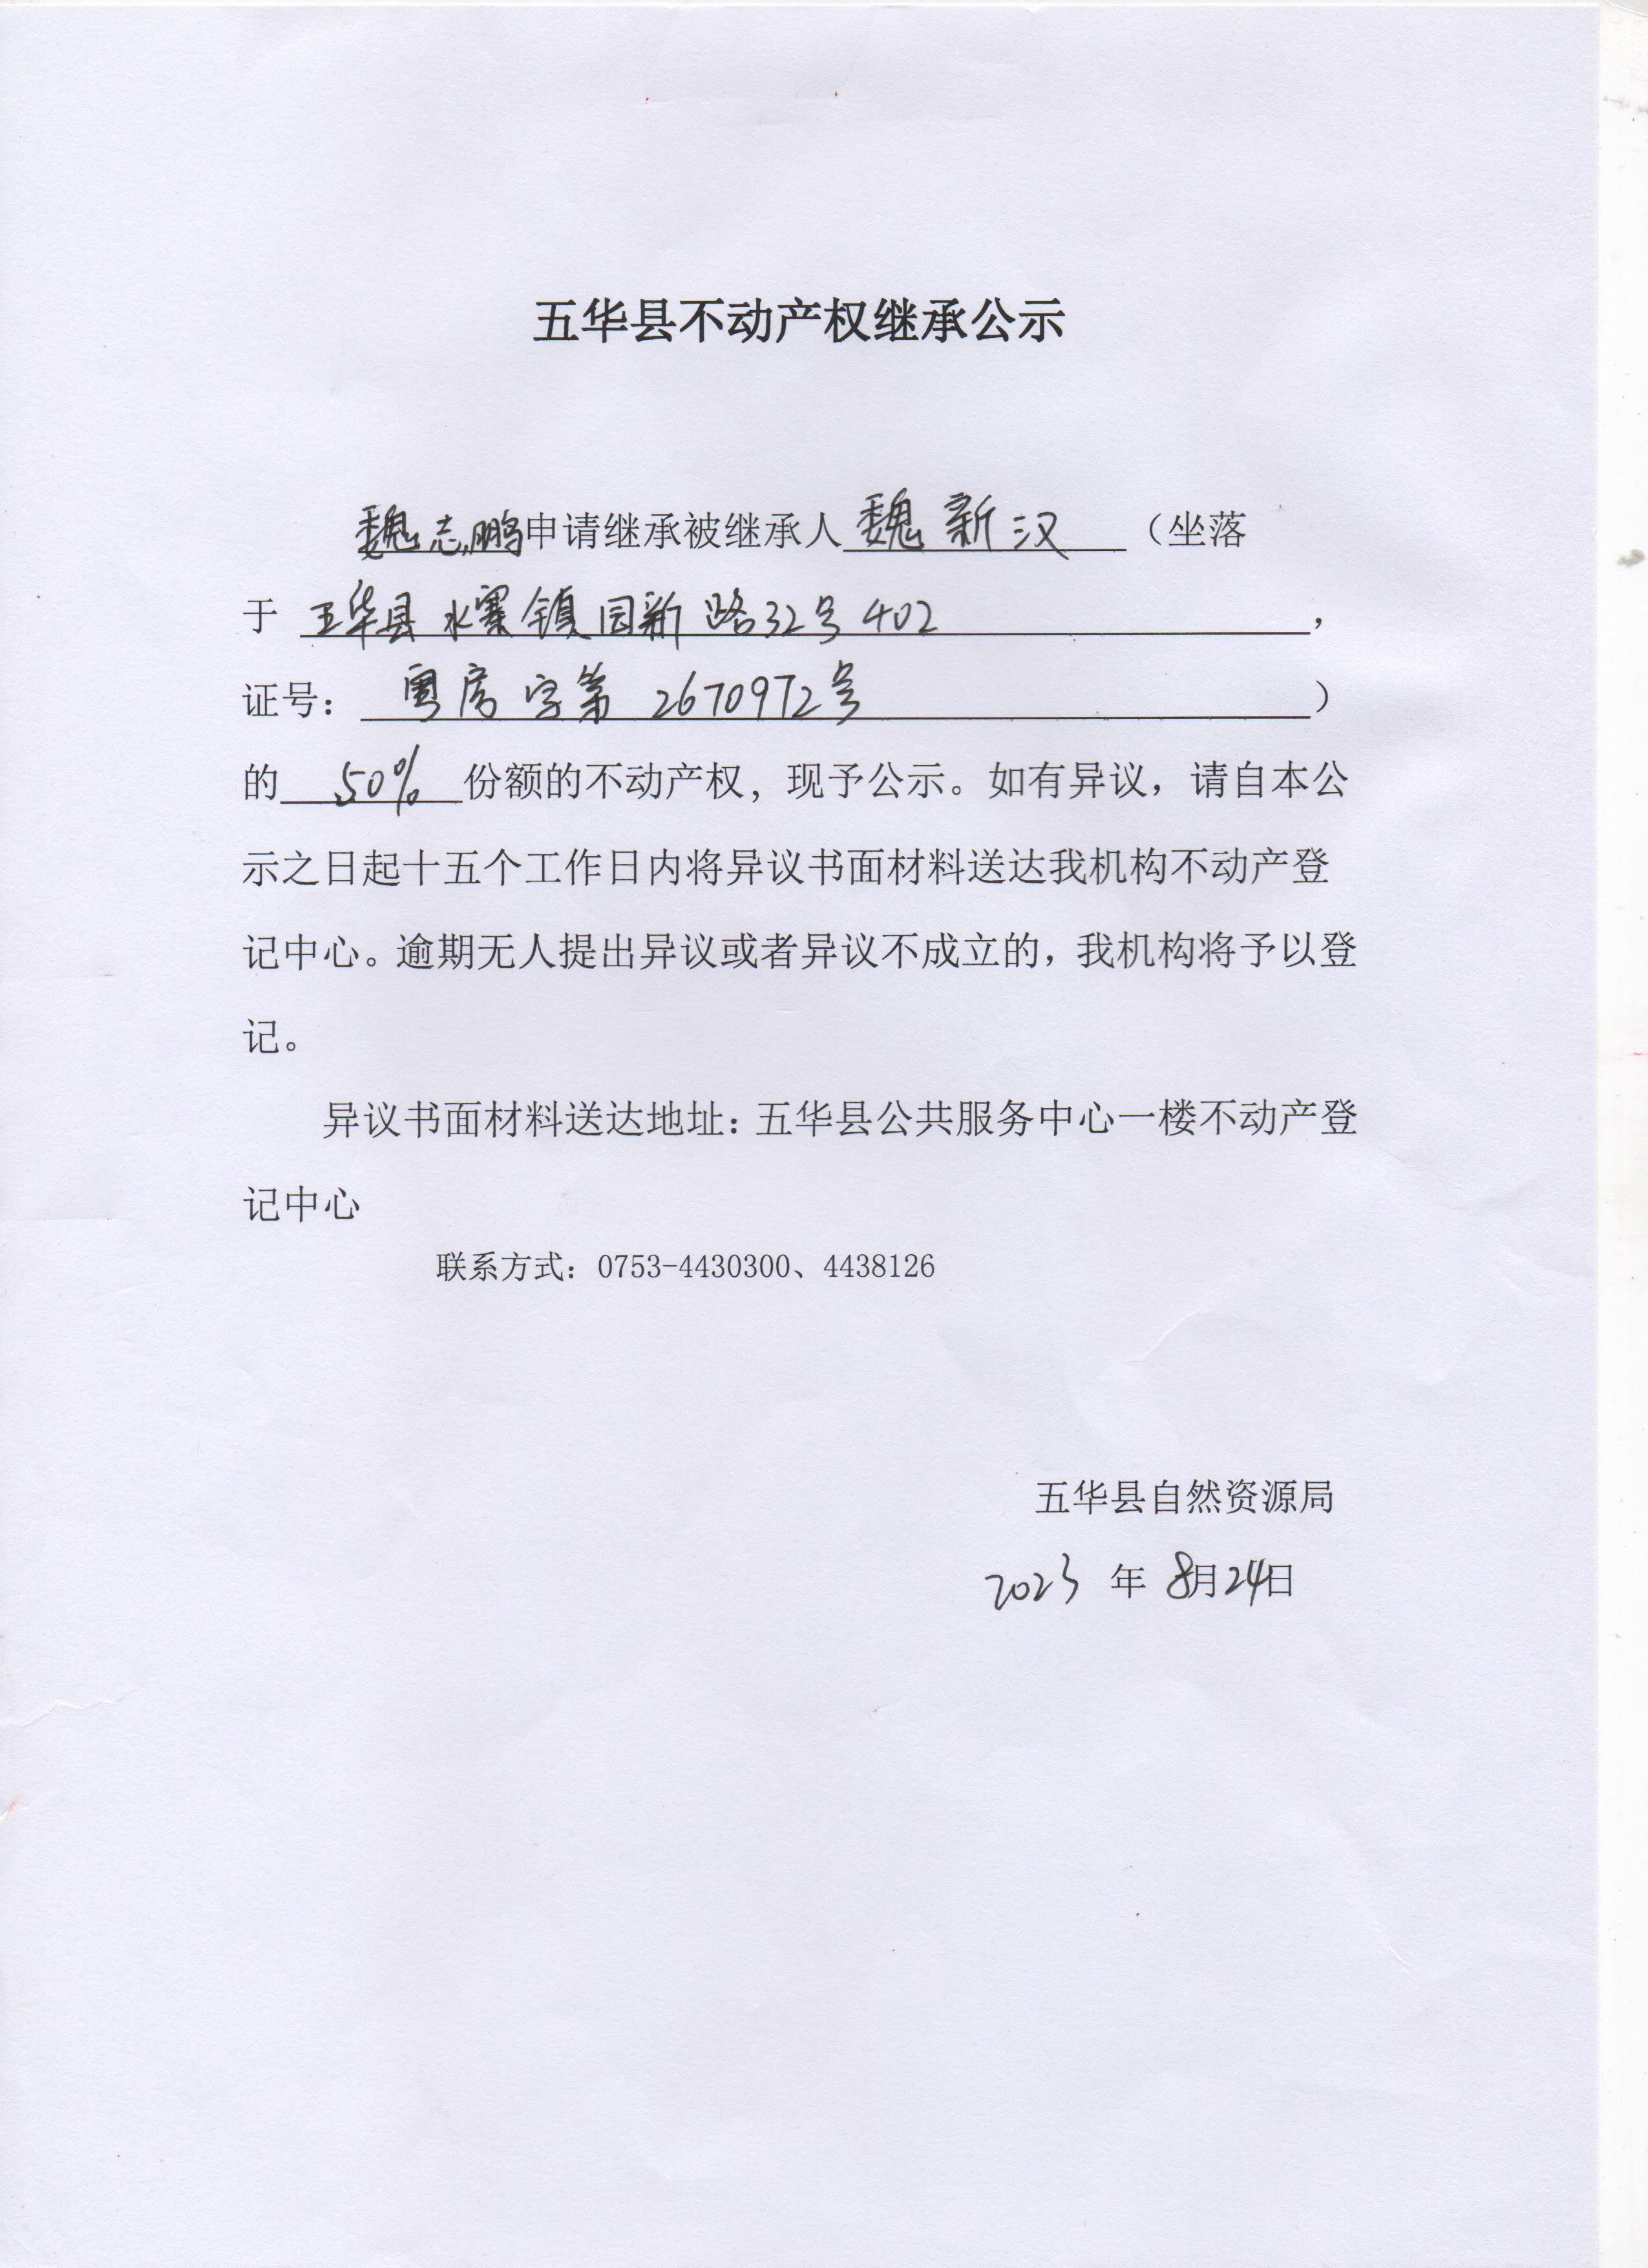 五华县不动产权继承公示（魏新汉） 001.jpg